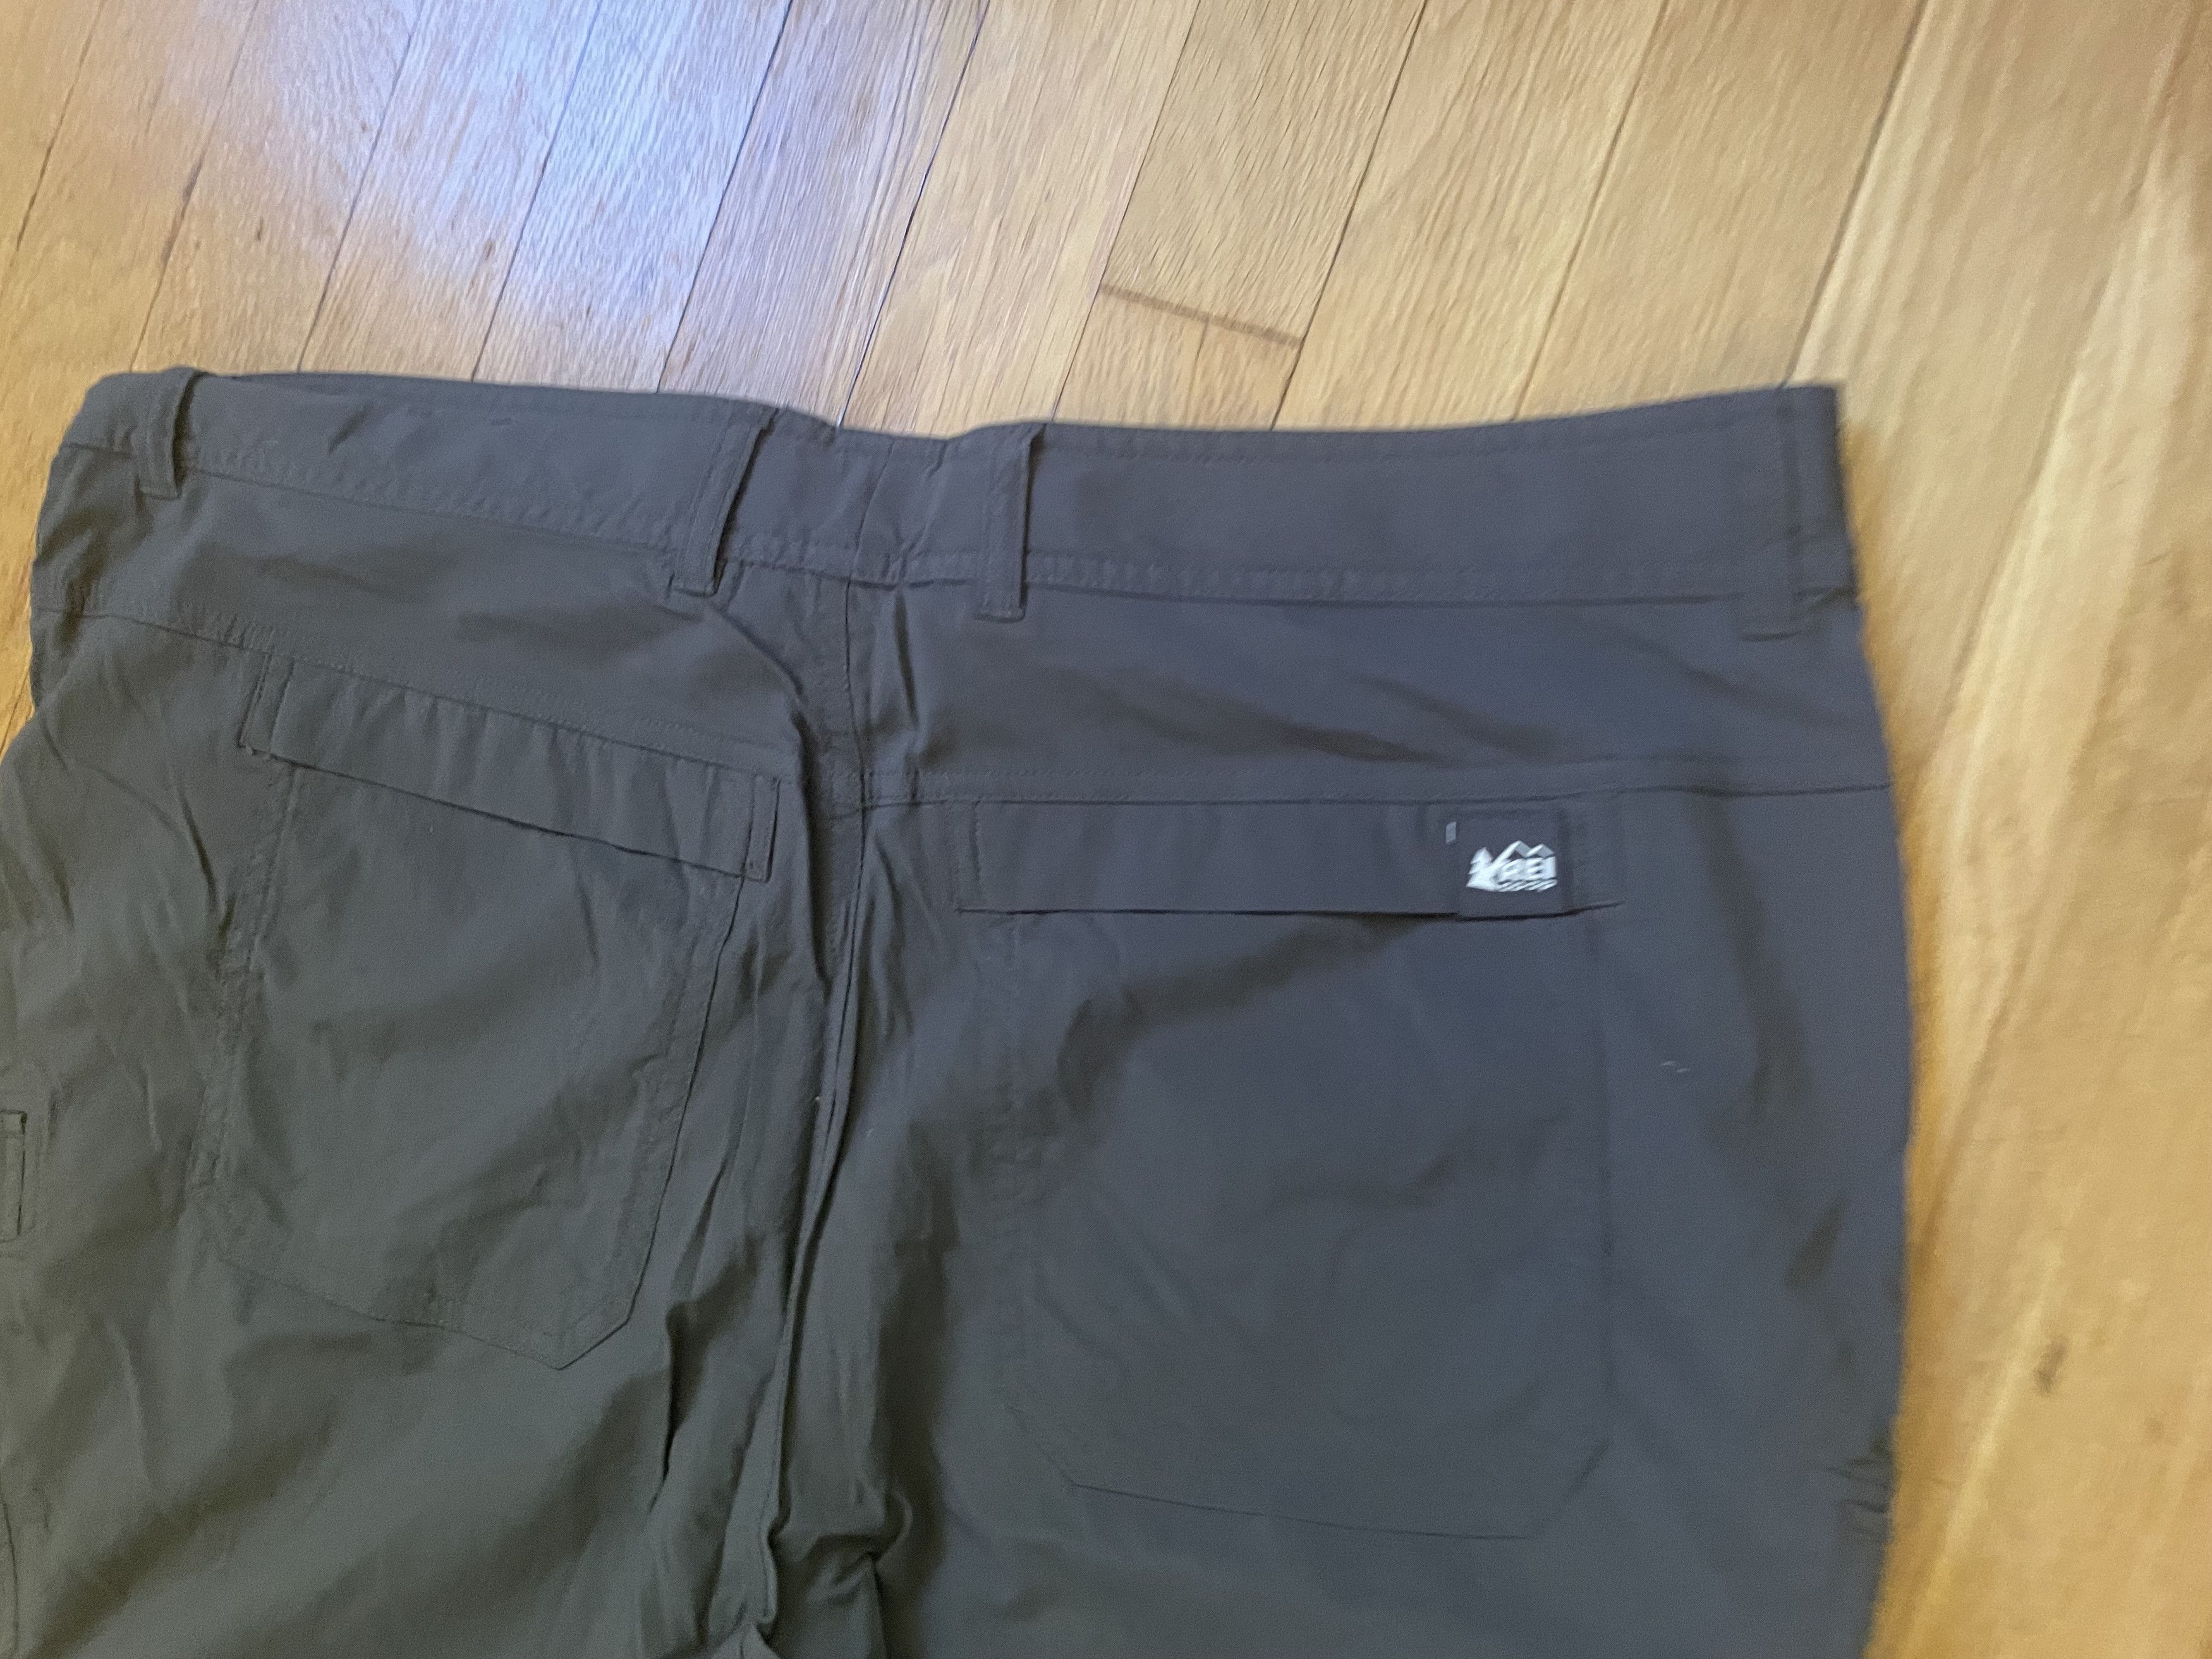 Rei REI Cargo Pants Size US 38 / EU 54 - 4 Thumbnail